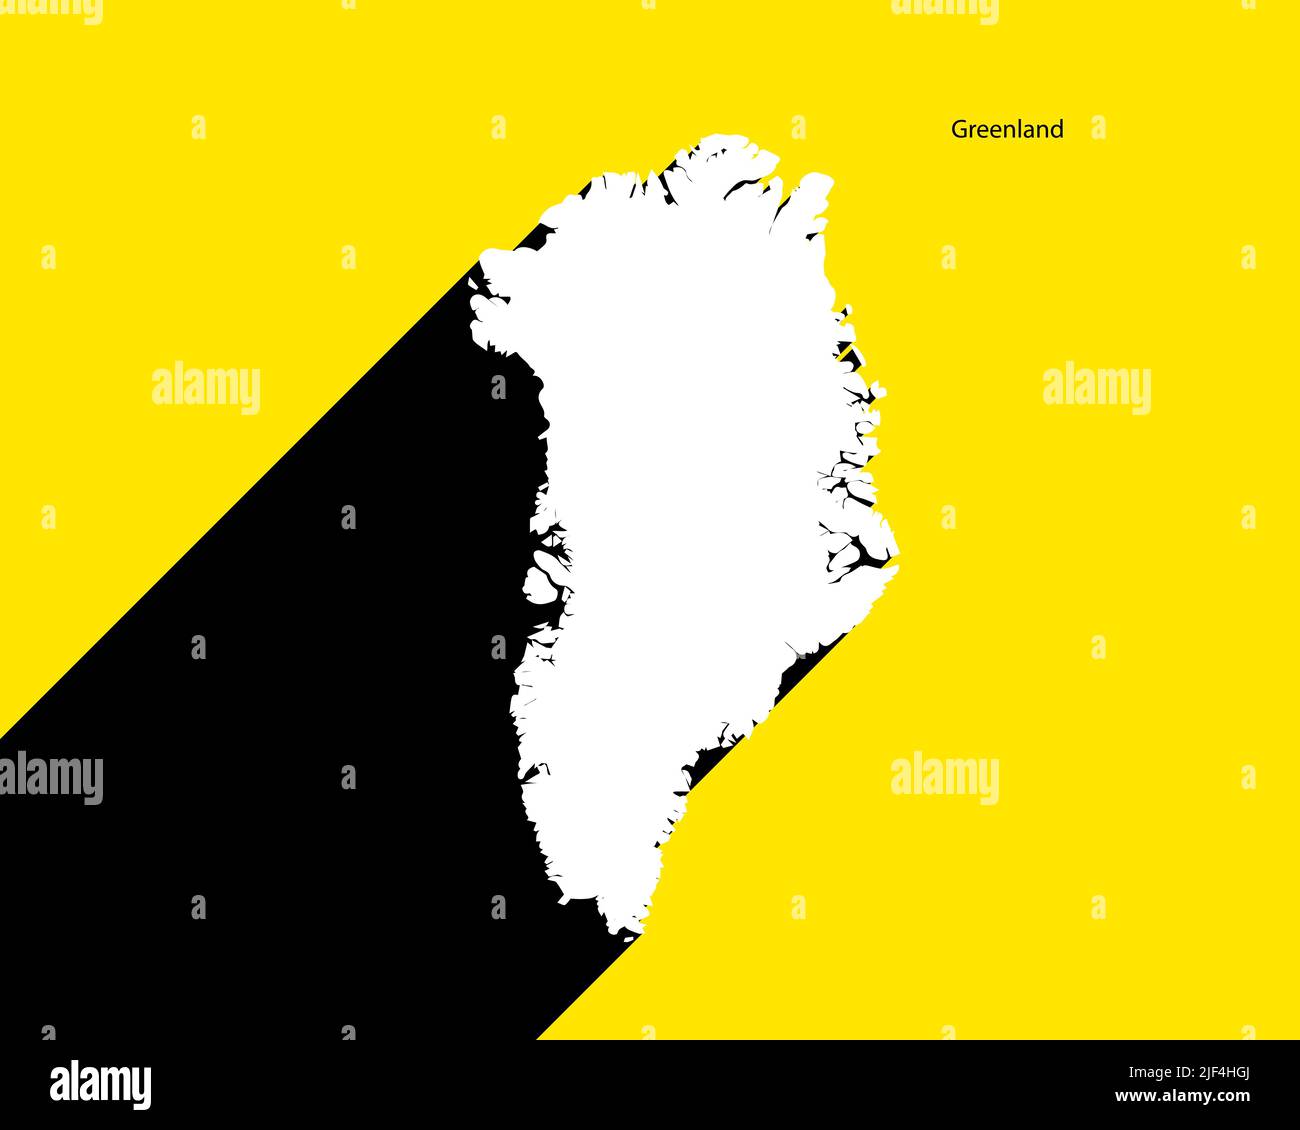 Mappa Groenlandia su poster retrò con lunga ombra. Segno vintage facile da modificare, manipolare, ridimensionare o colorare. Illustrazione Vettoriale